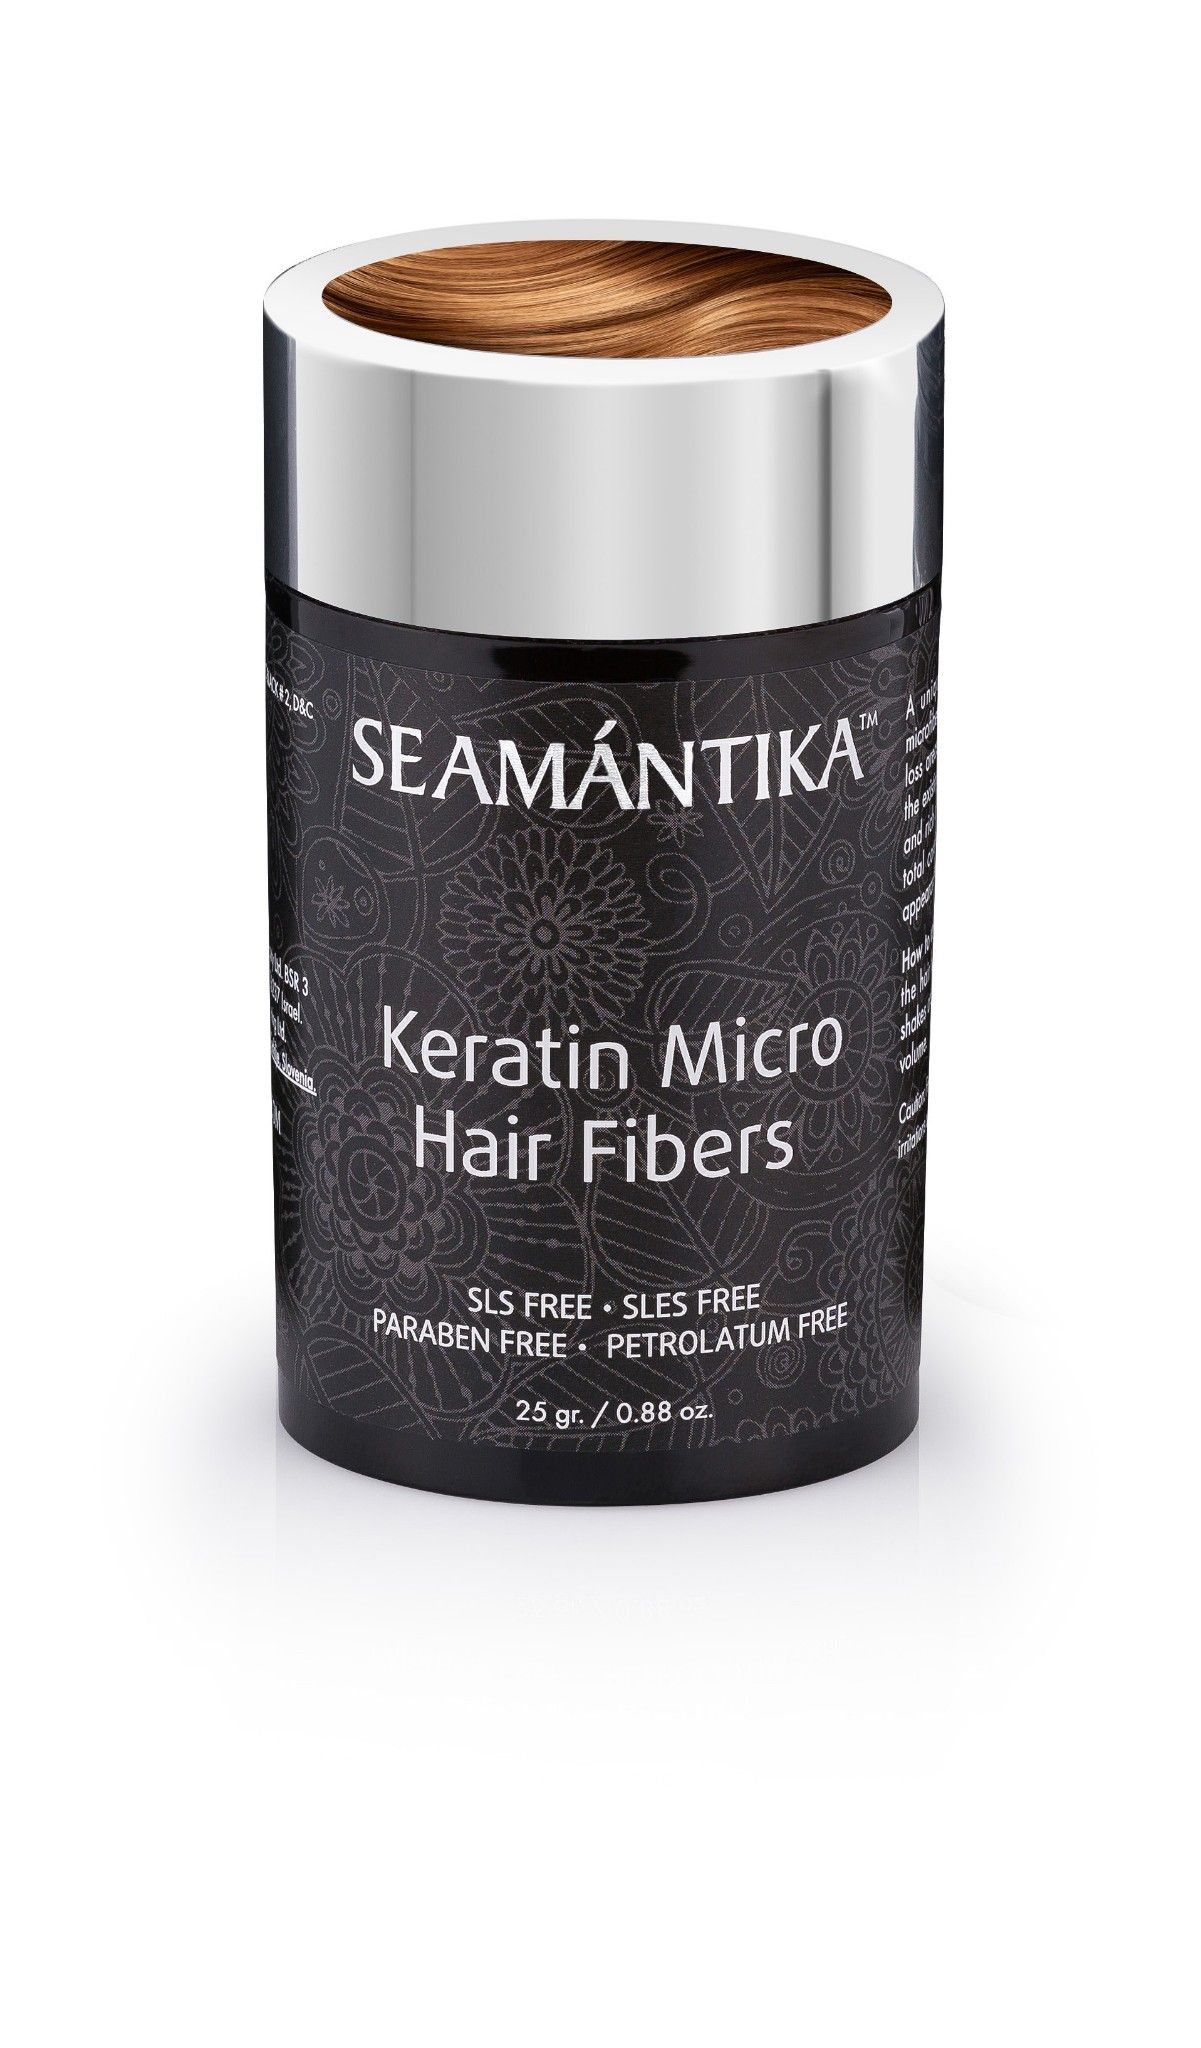  Sợi Keratin Siêu Nhỏ - Tóc Nâu - Dành cho mái tóc mỏng - KERATIN MICRO HAIR FIBERS - BROWN 